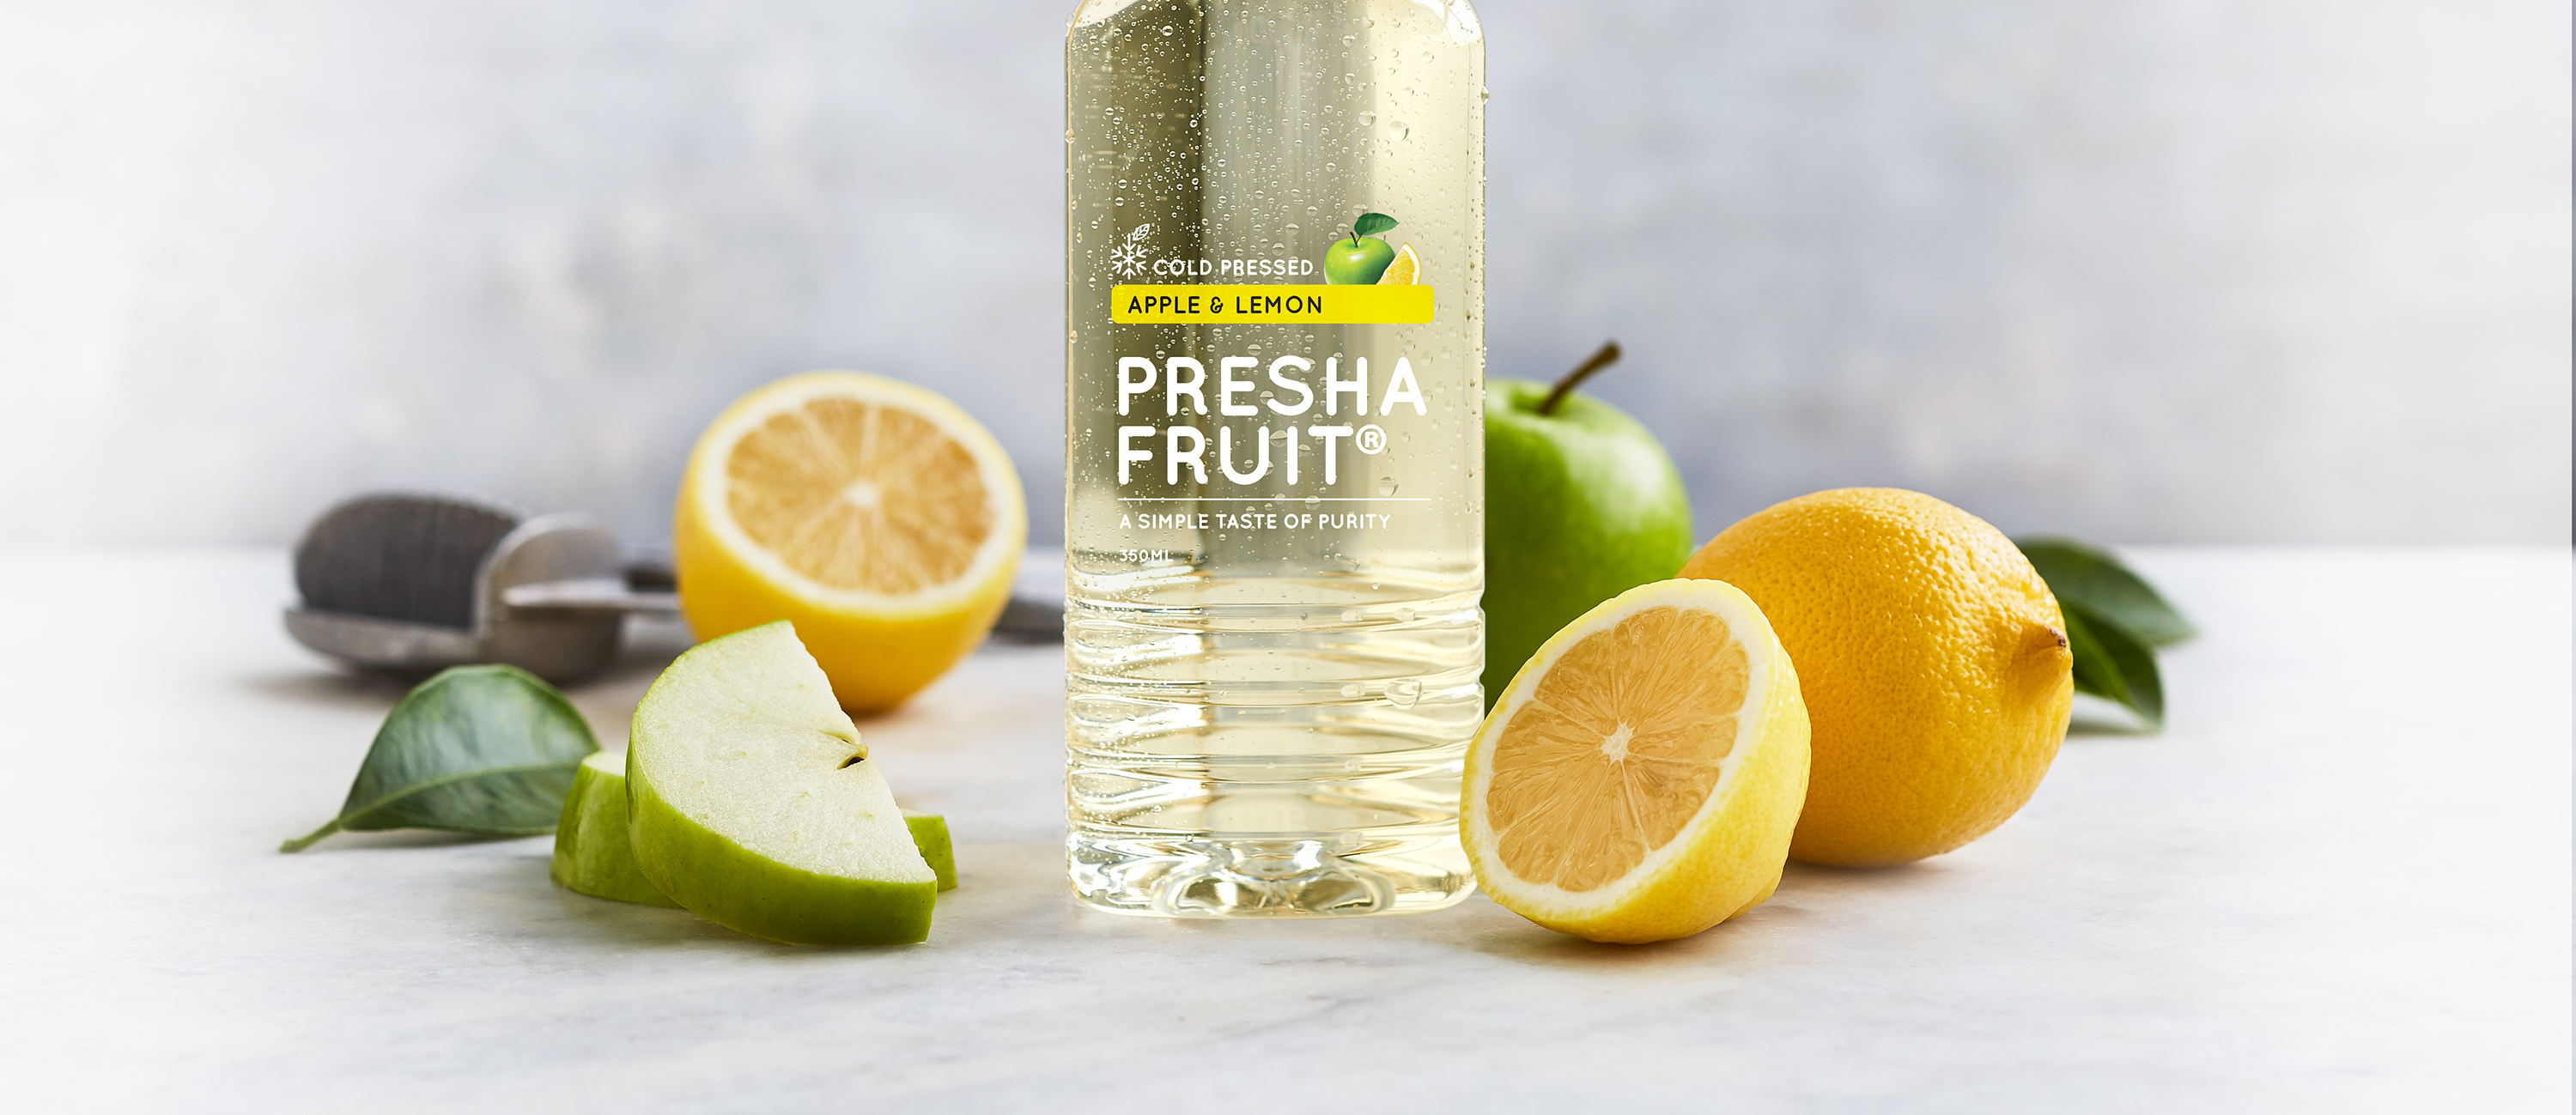 Apple & Lemon | Preshafruit